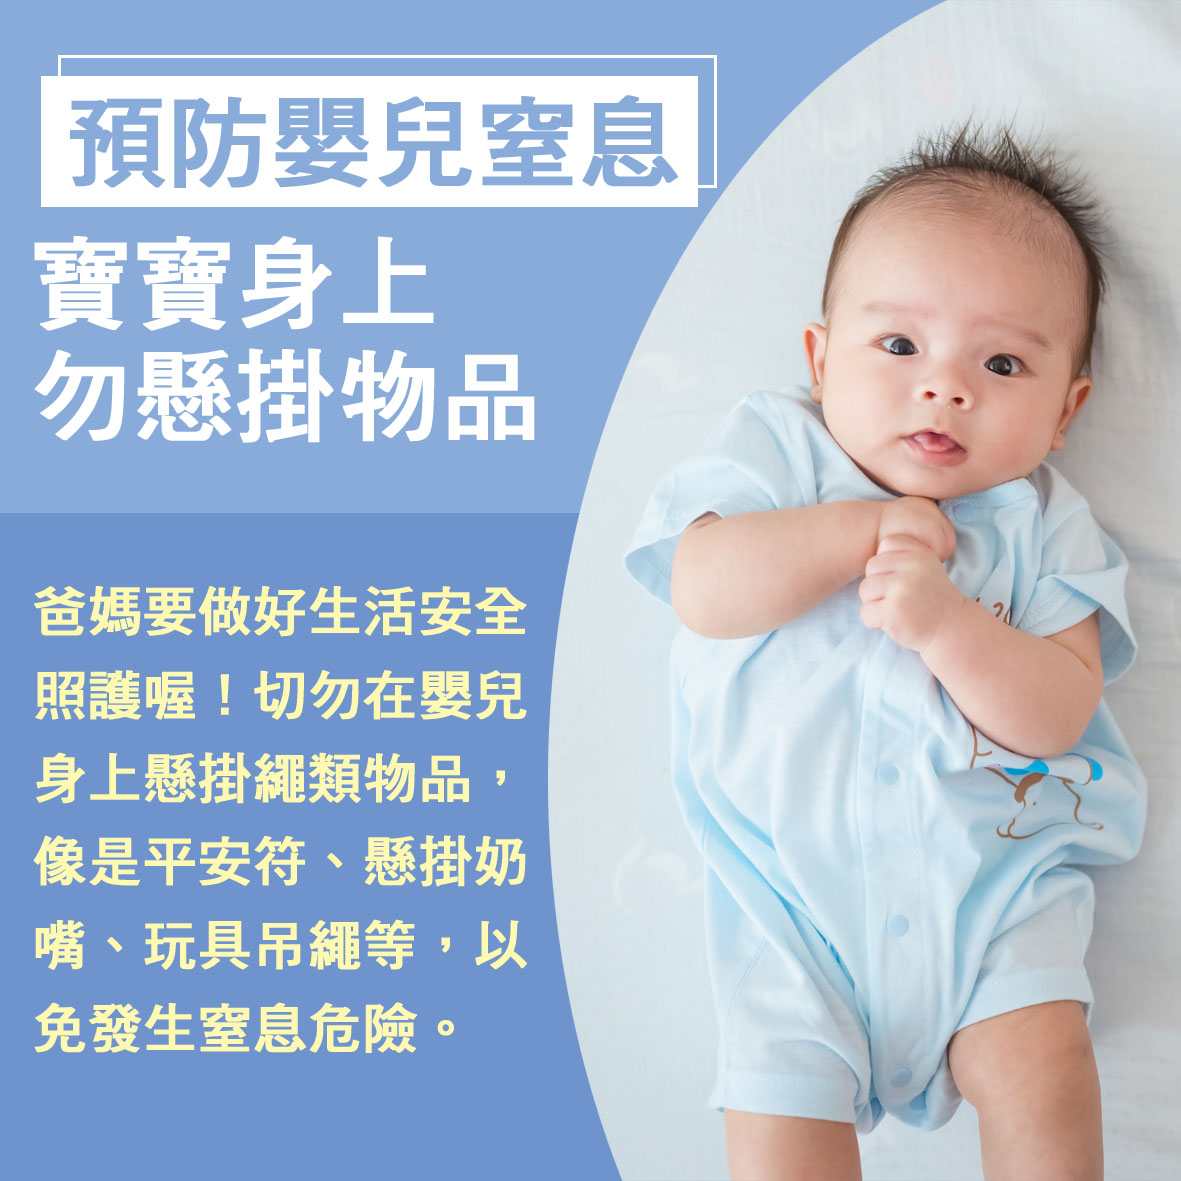 寶寶篇第11週-預防嬰兒窒息 寶寶身上勿懸掛物品